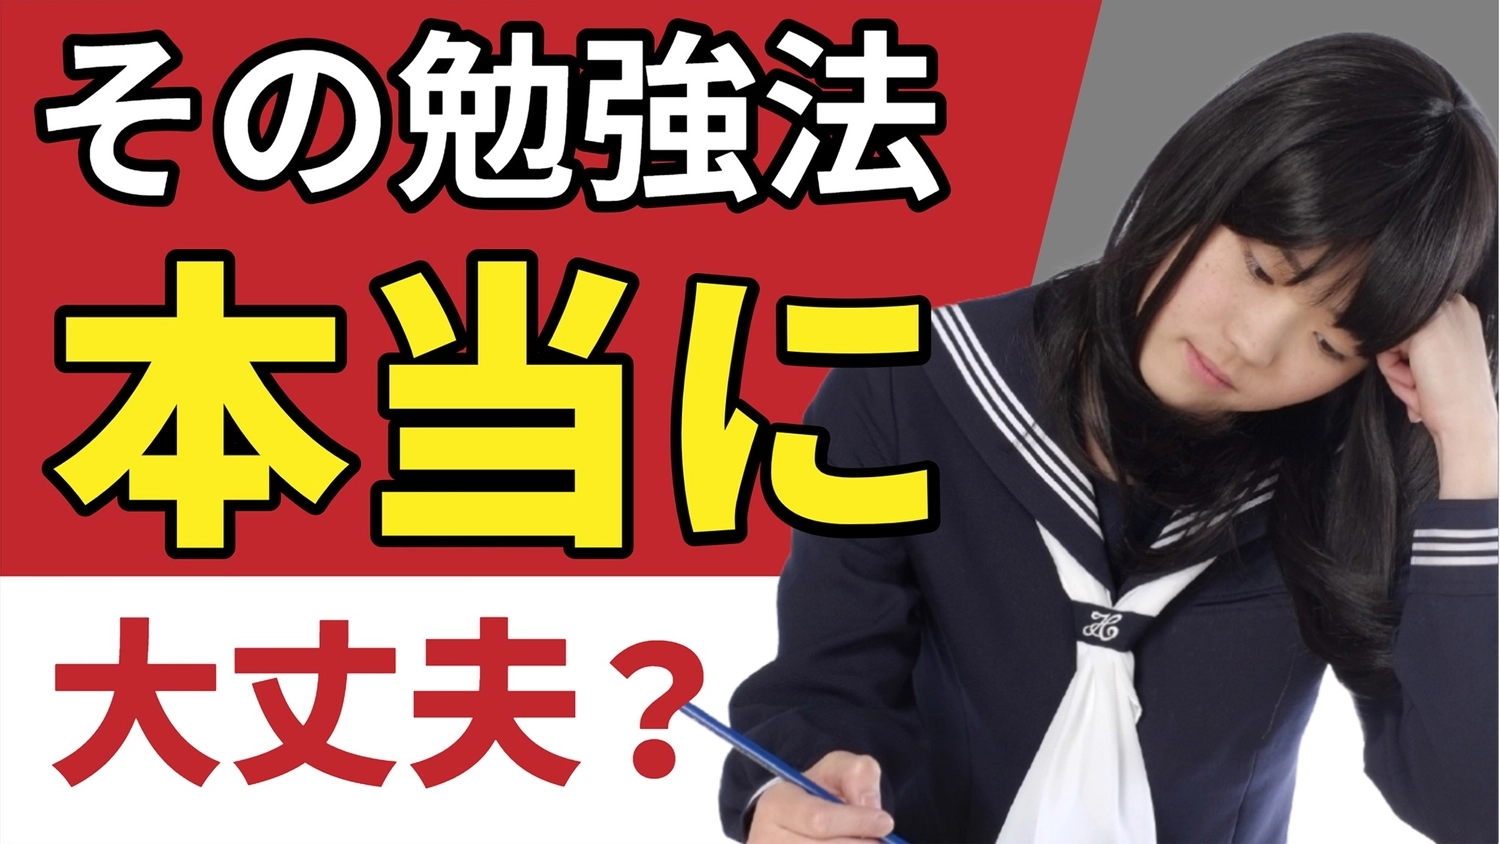 勉強法のサムネイル, Japanese people, Woman, student, Youtube Thumbnail template